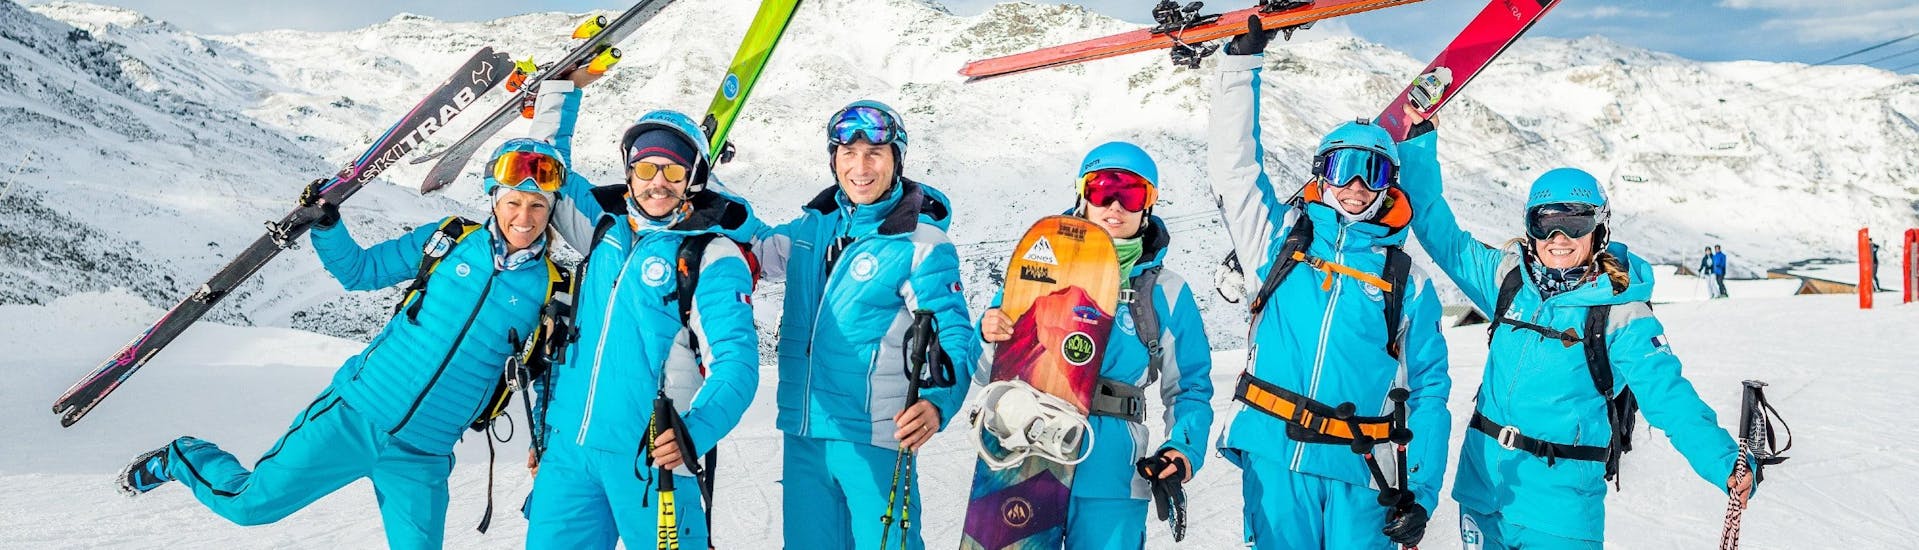 Les moniteurs de ski et snowboard de l'école de ski ESI Alpe d'Huez - European Ski School se réjouissent d'accueillir les participants au cours de ski et de snowboard.